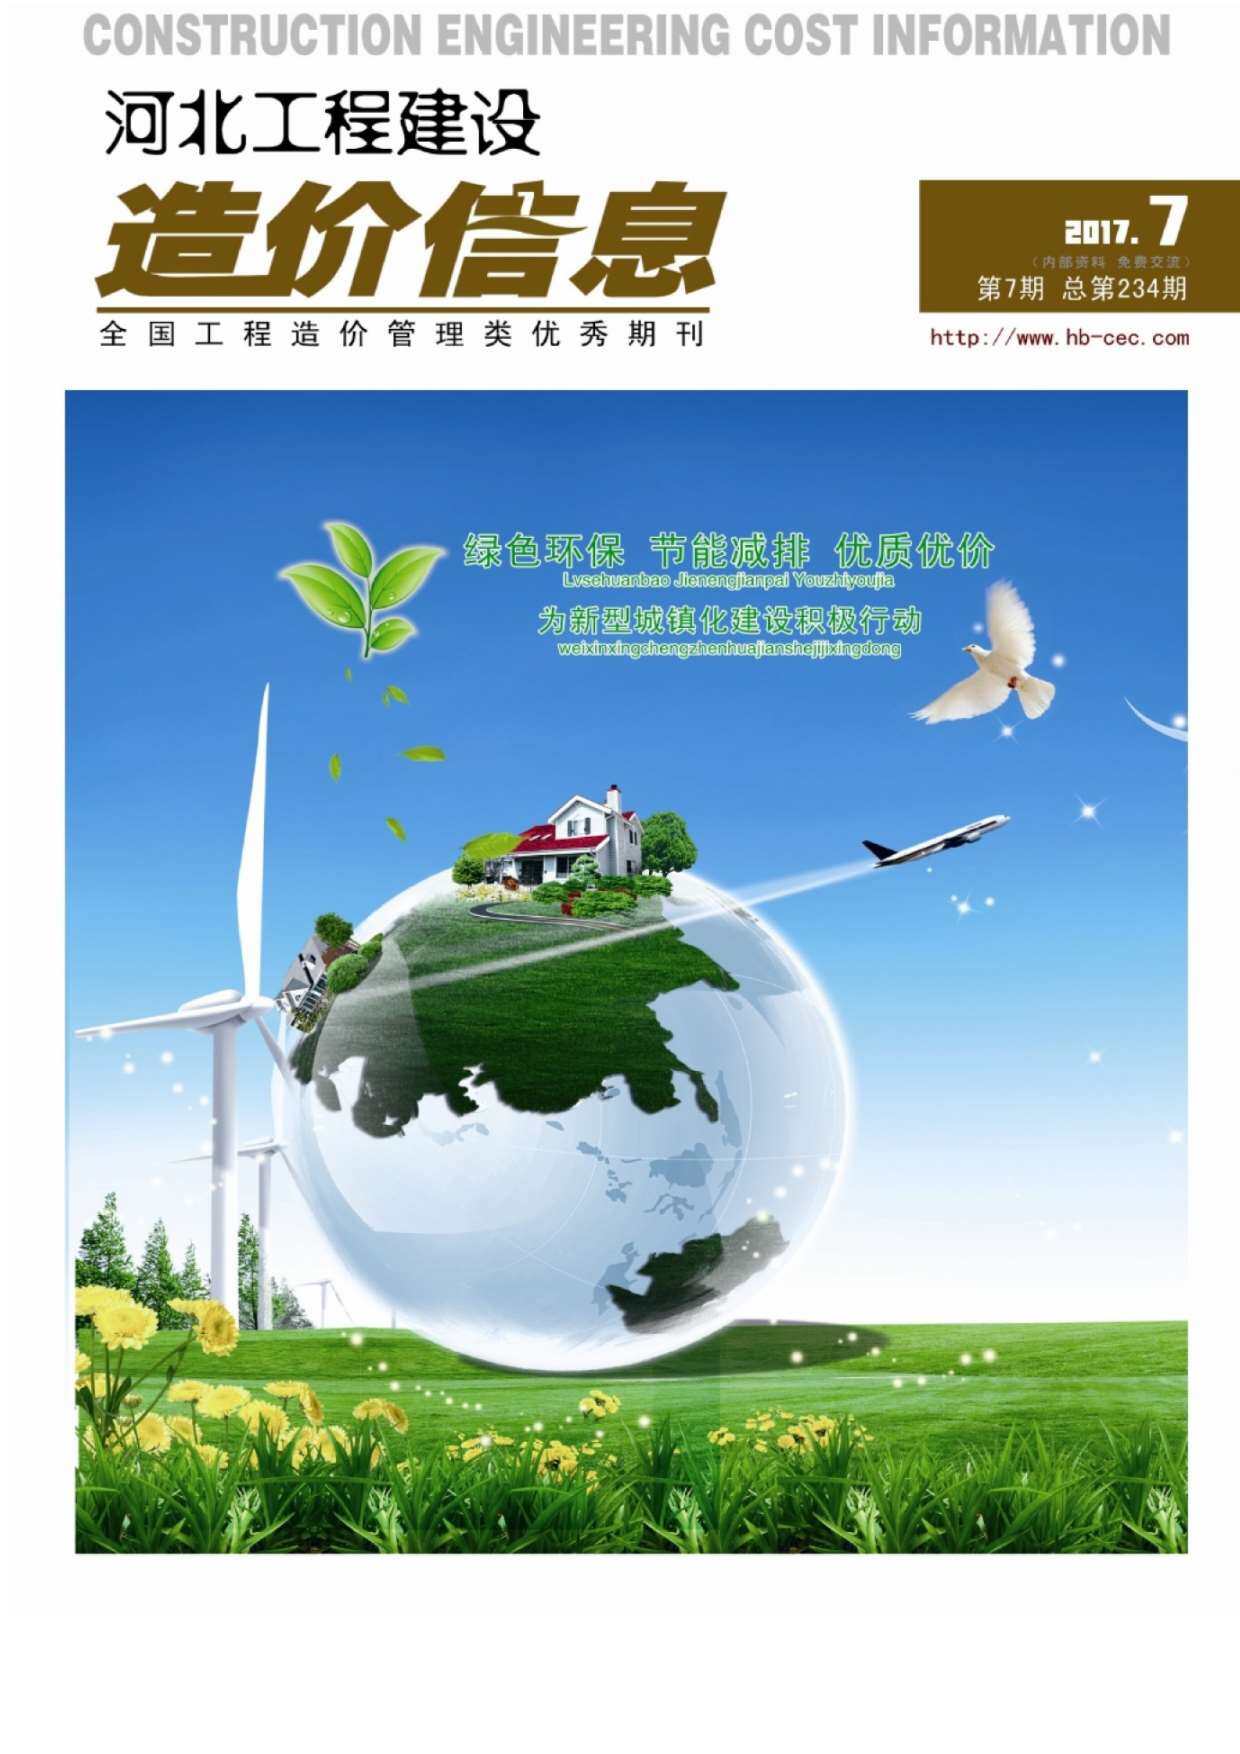 河北省2017年7月工程造价信息期刊